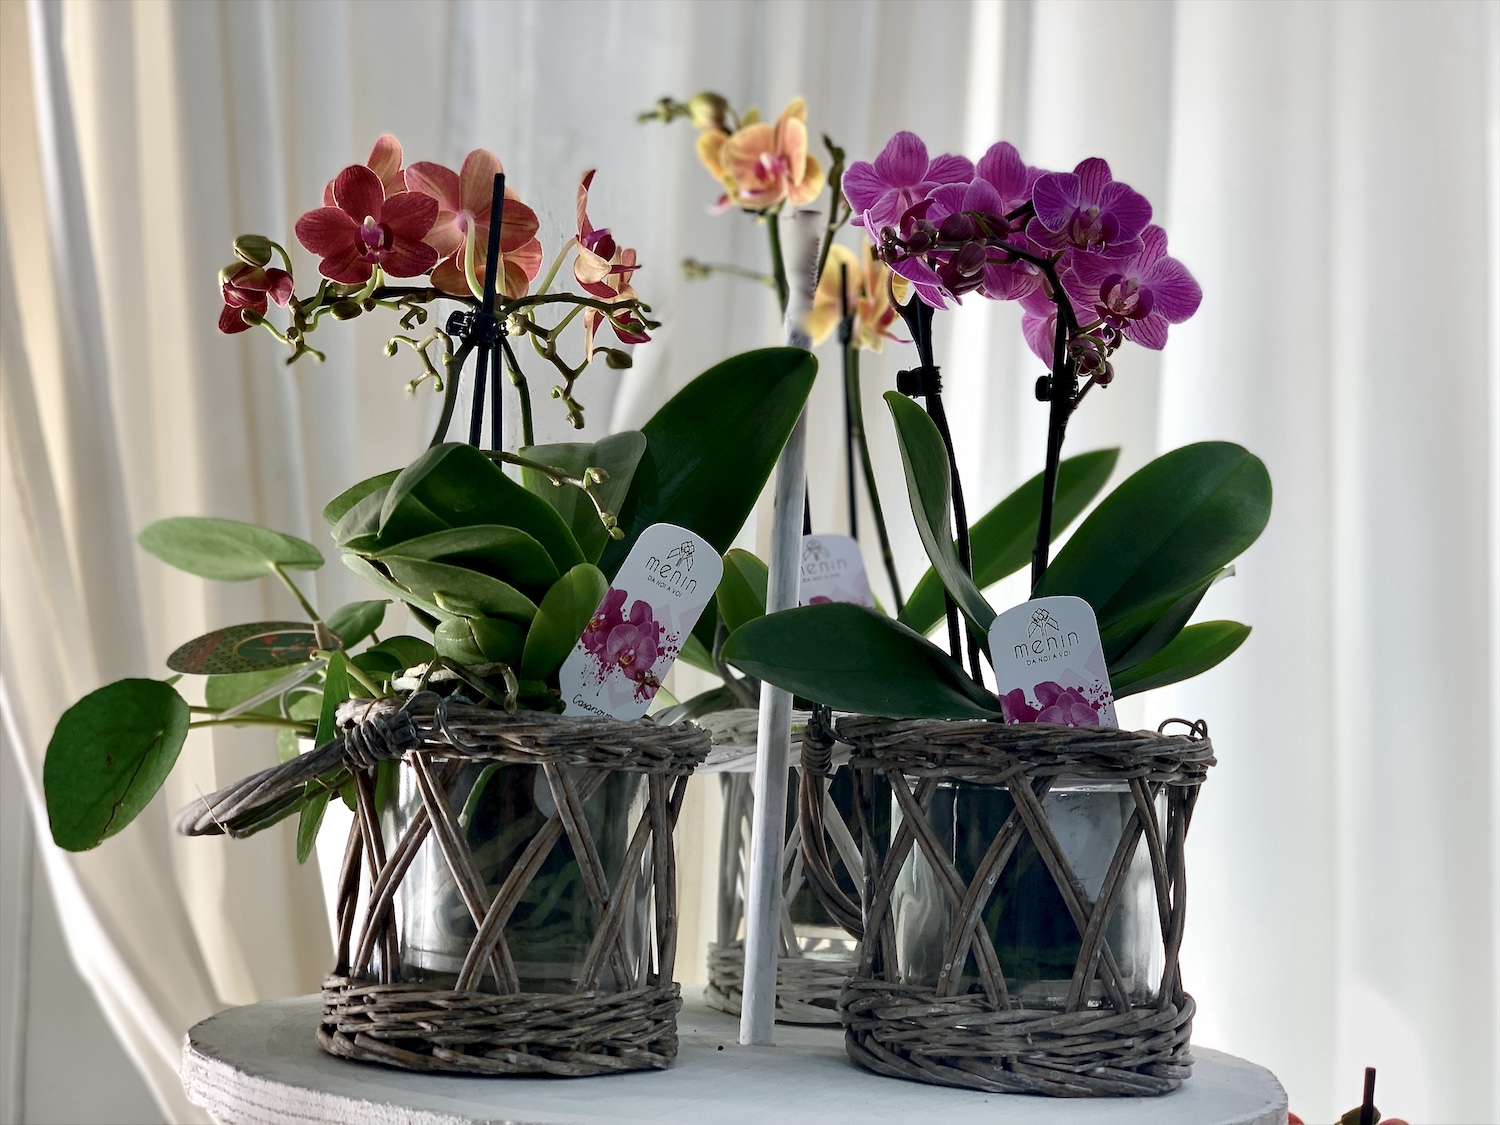 Piante di orchidee - Orchidee - Orchidee piante